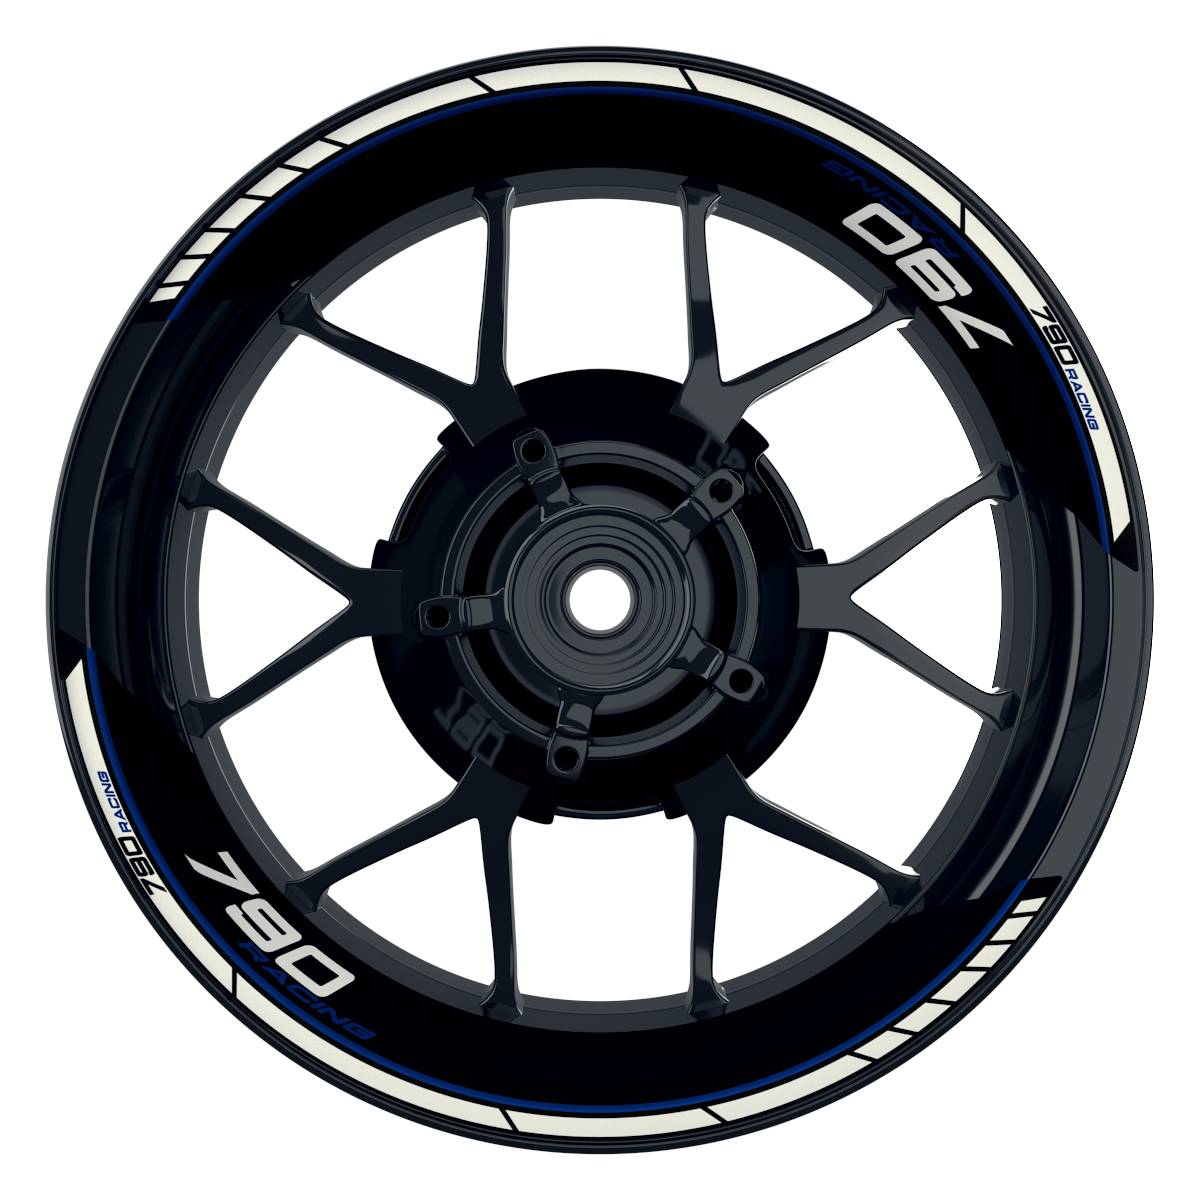 KTM Racing 790 Clean schwarz blau Frontansicht